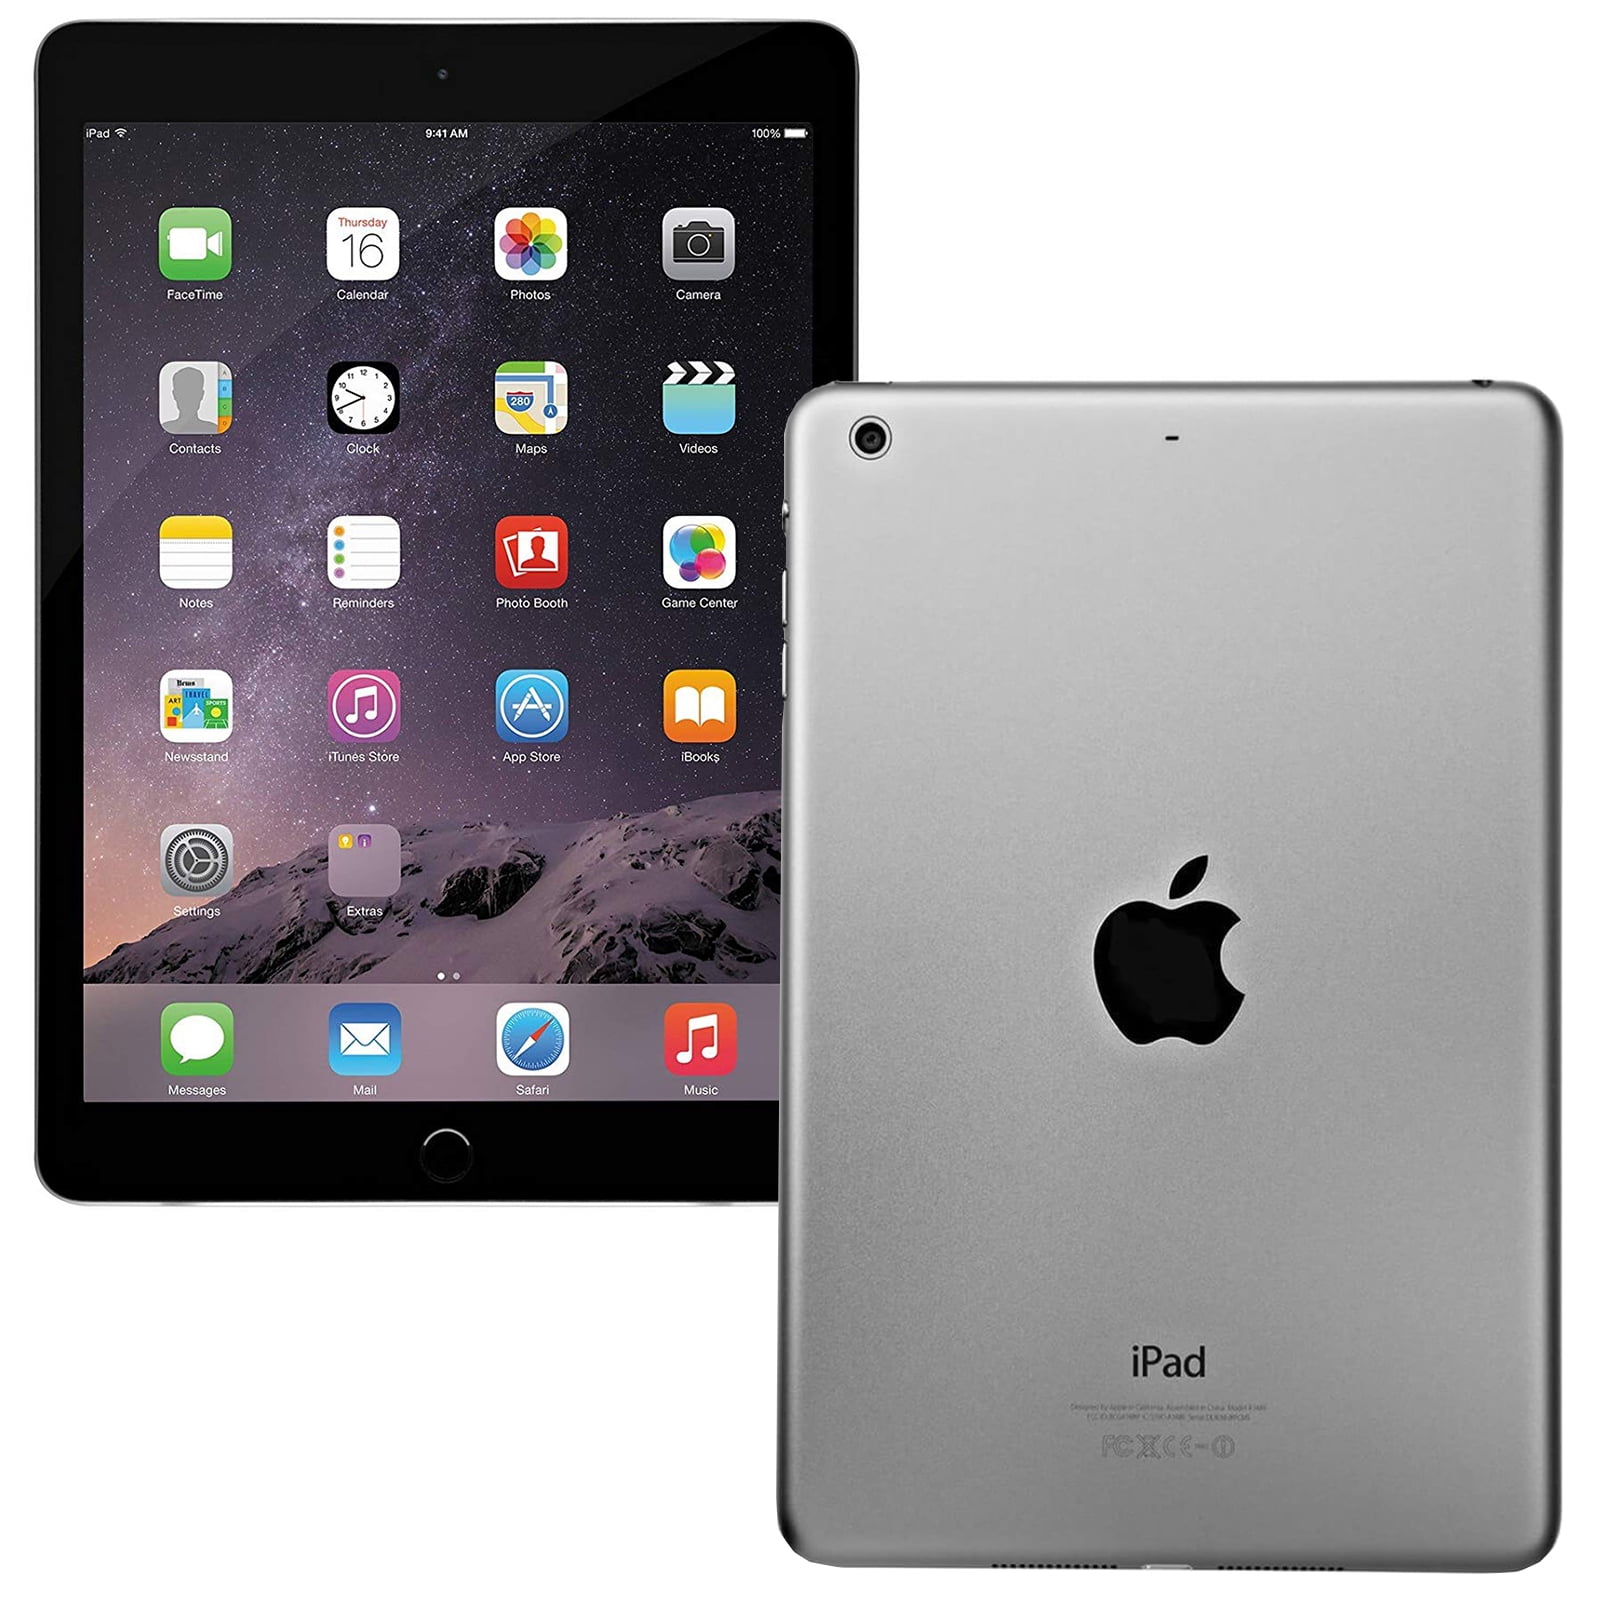 Bianco ref P605 Apple iPad 2 16GB WIFI solo iOS 9 